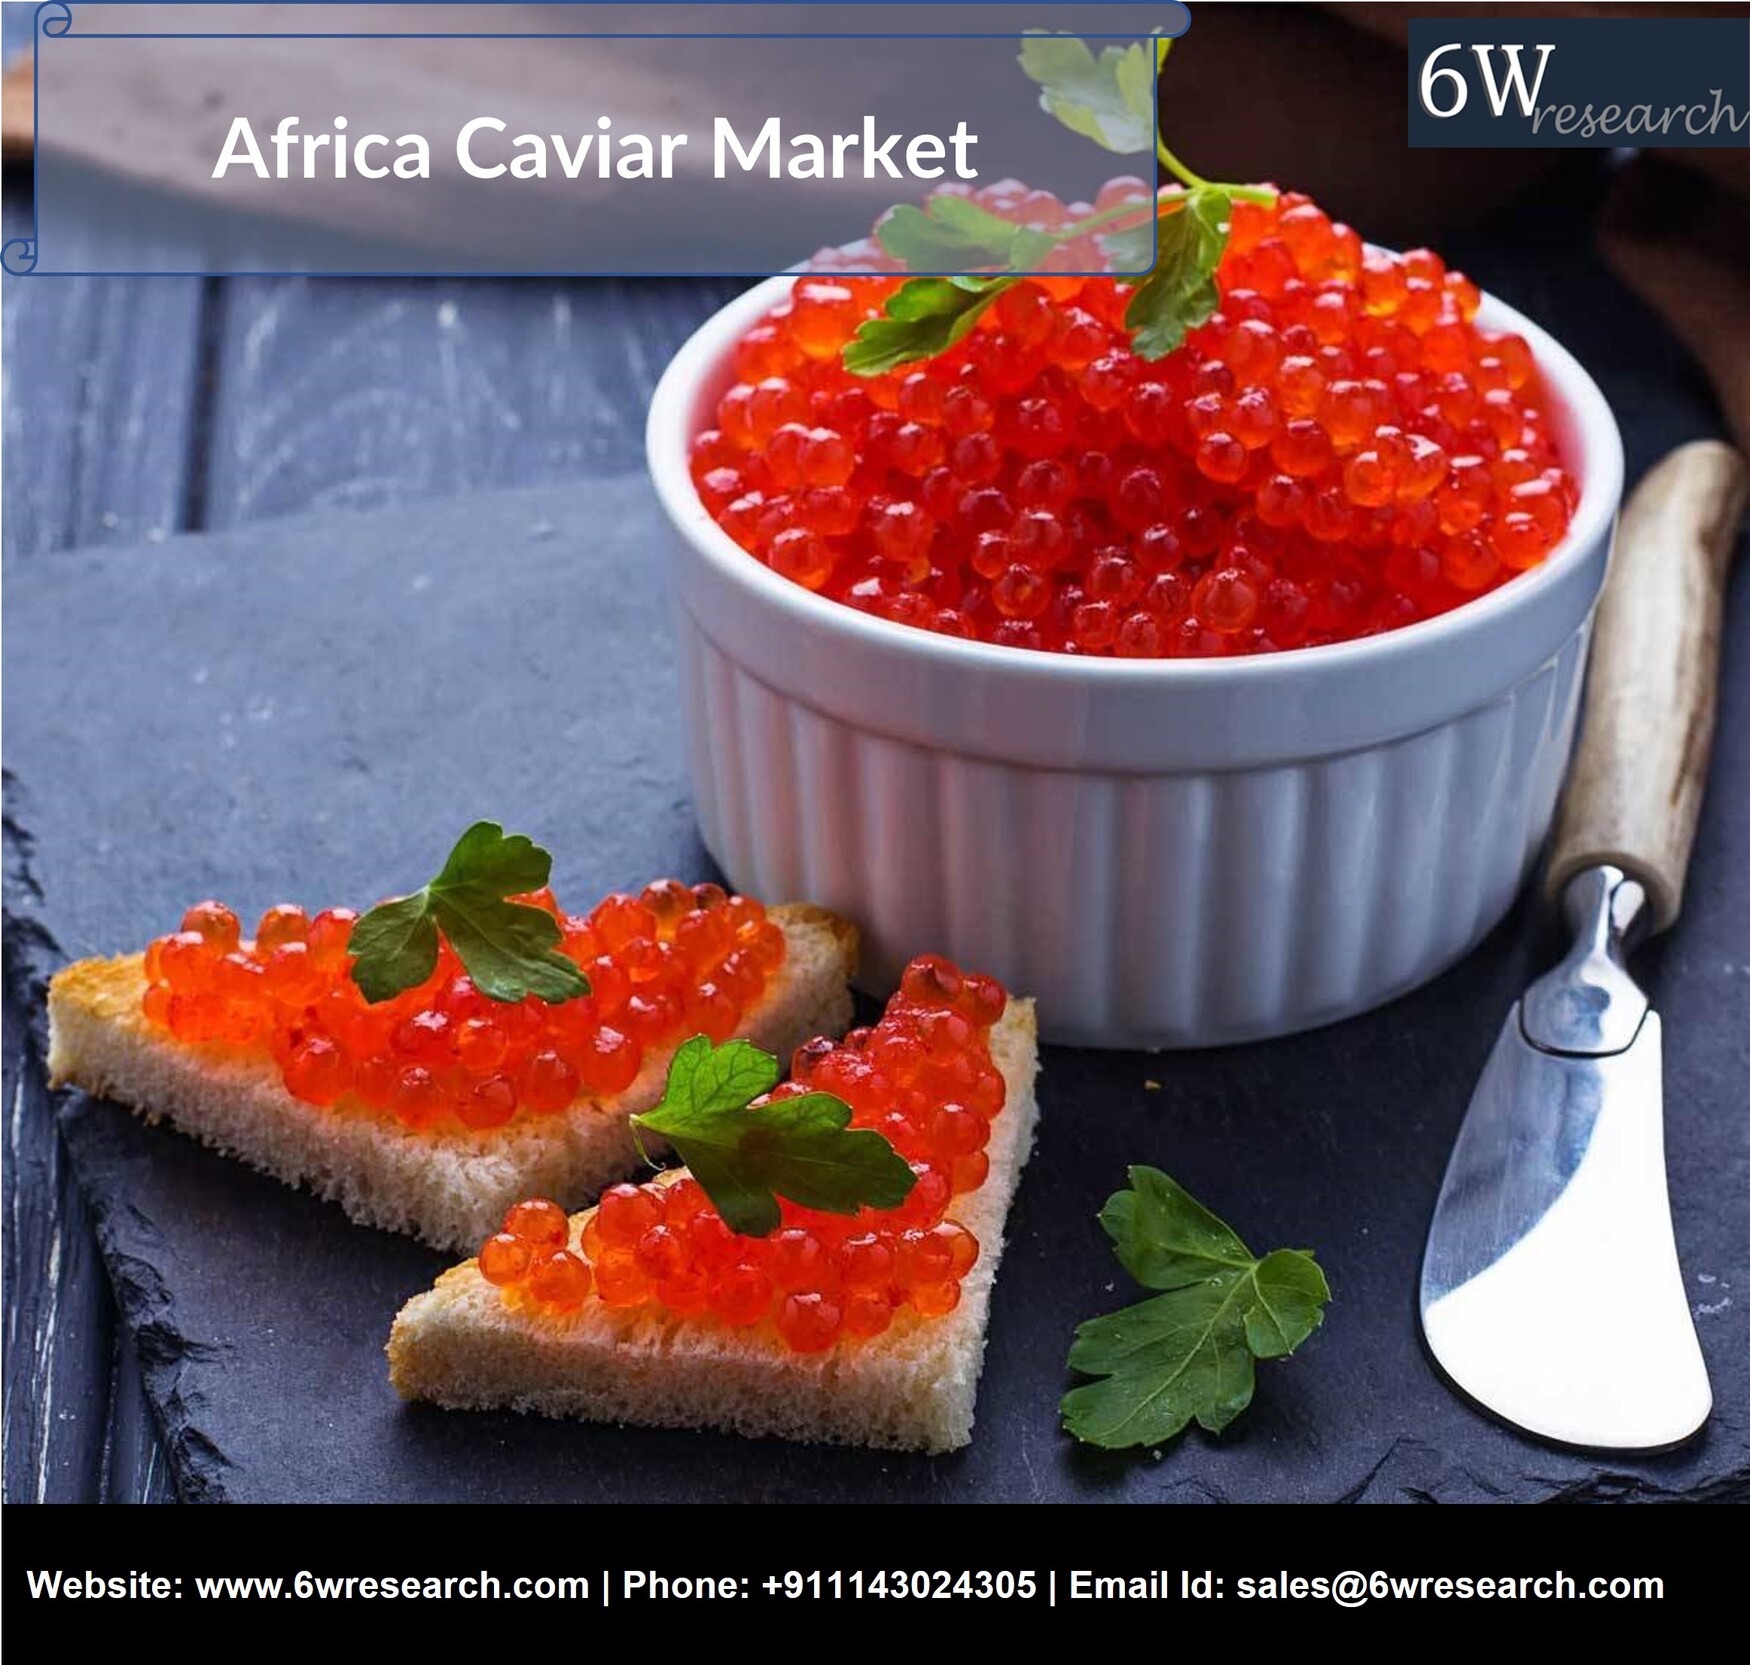 Africa Caviar Market